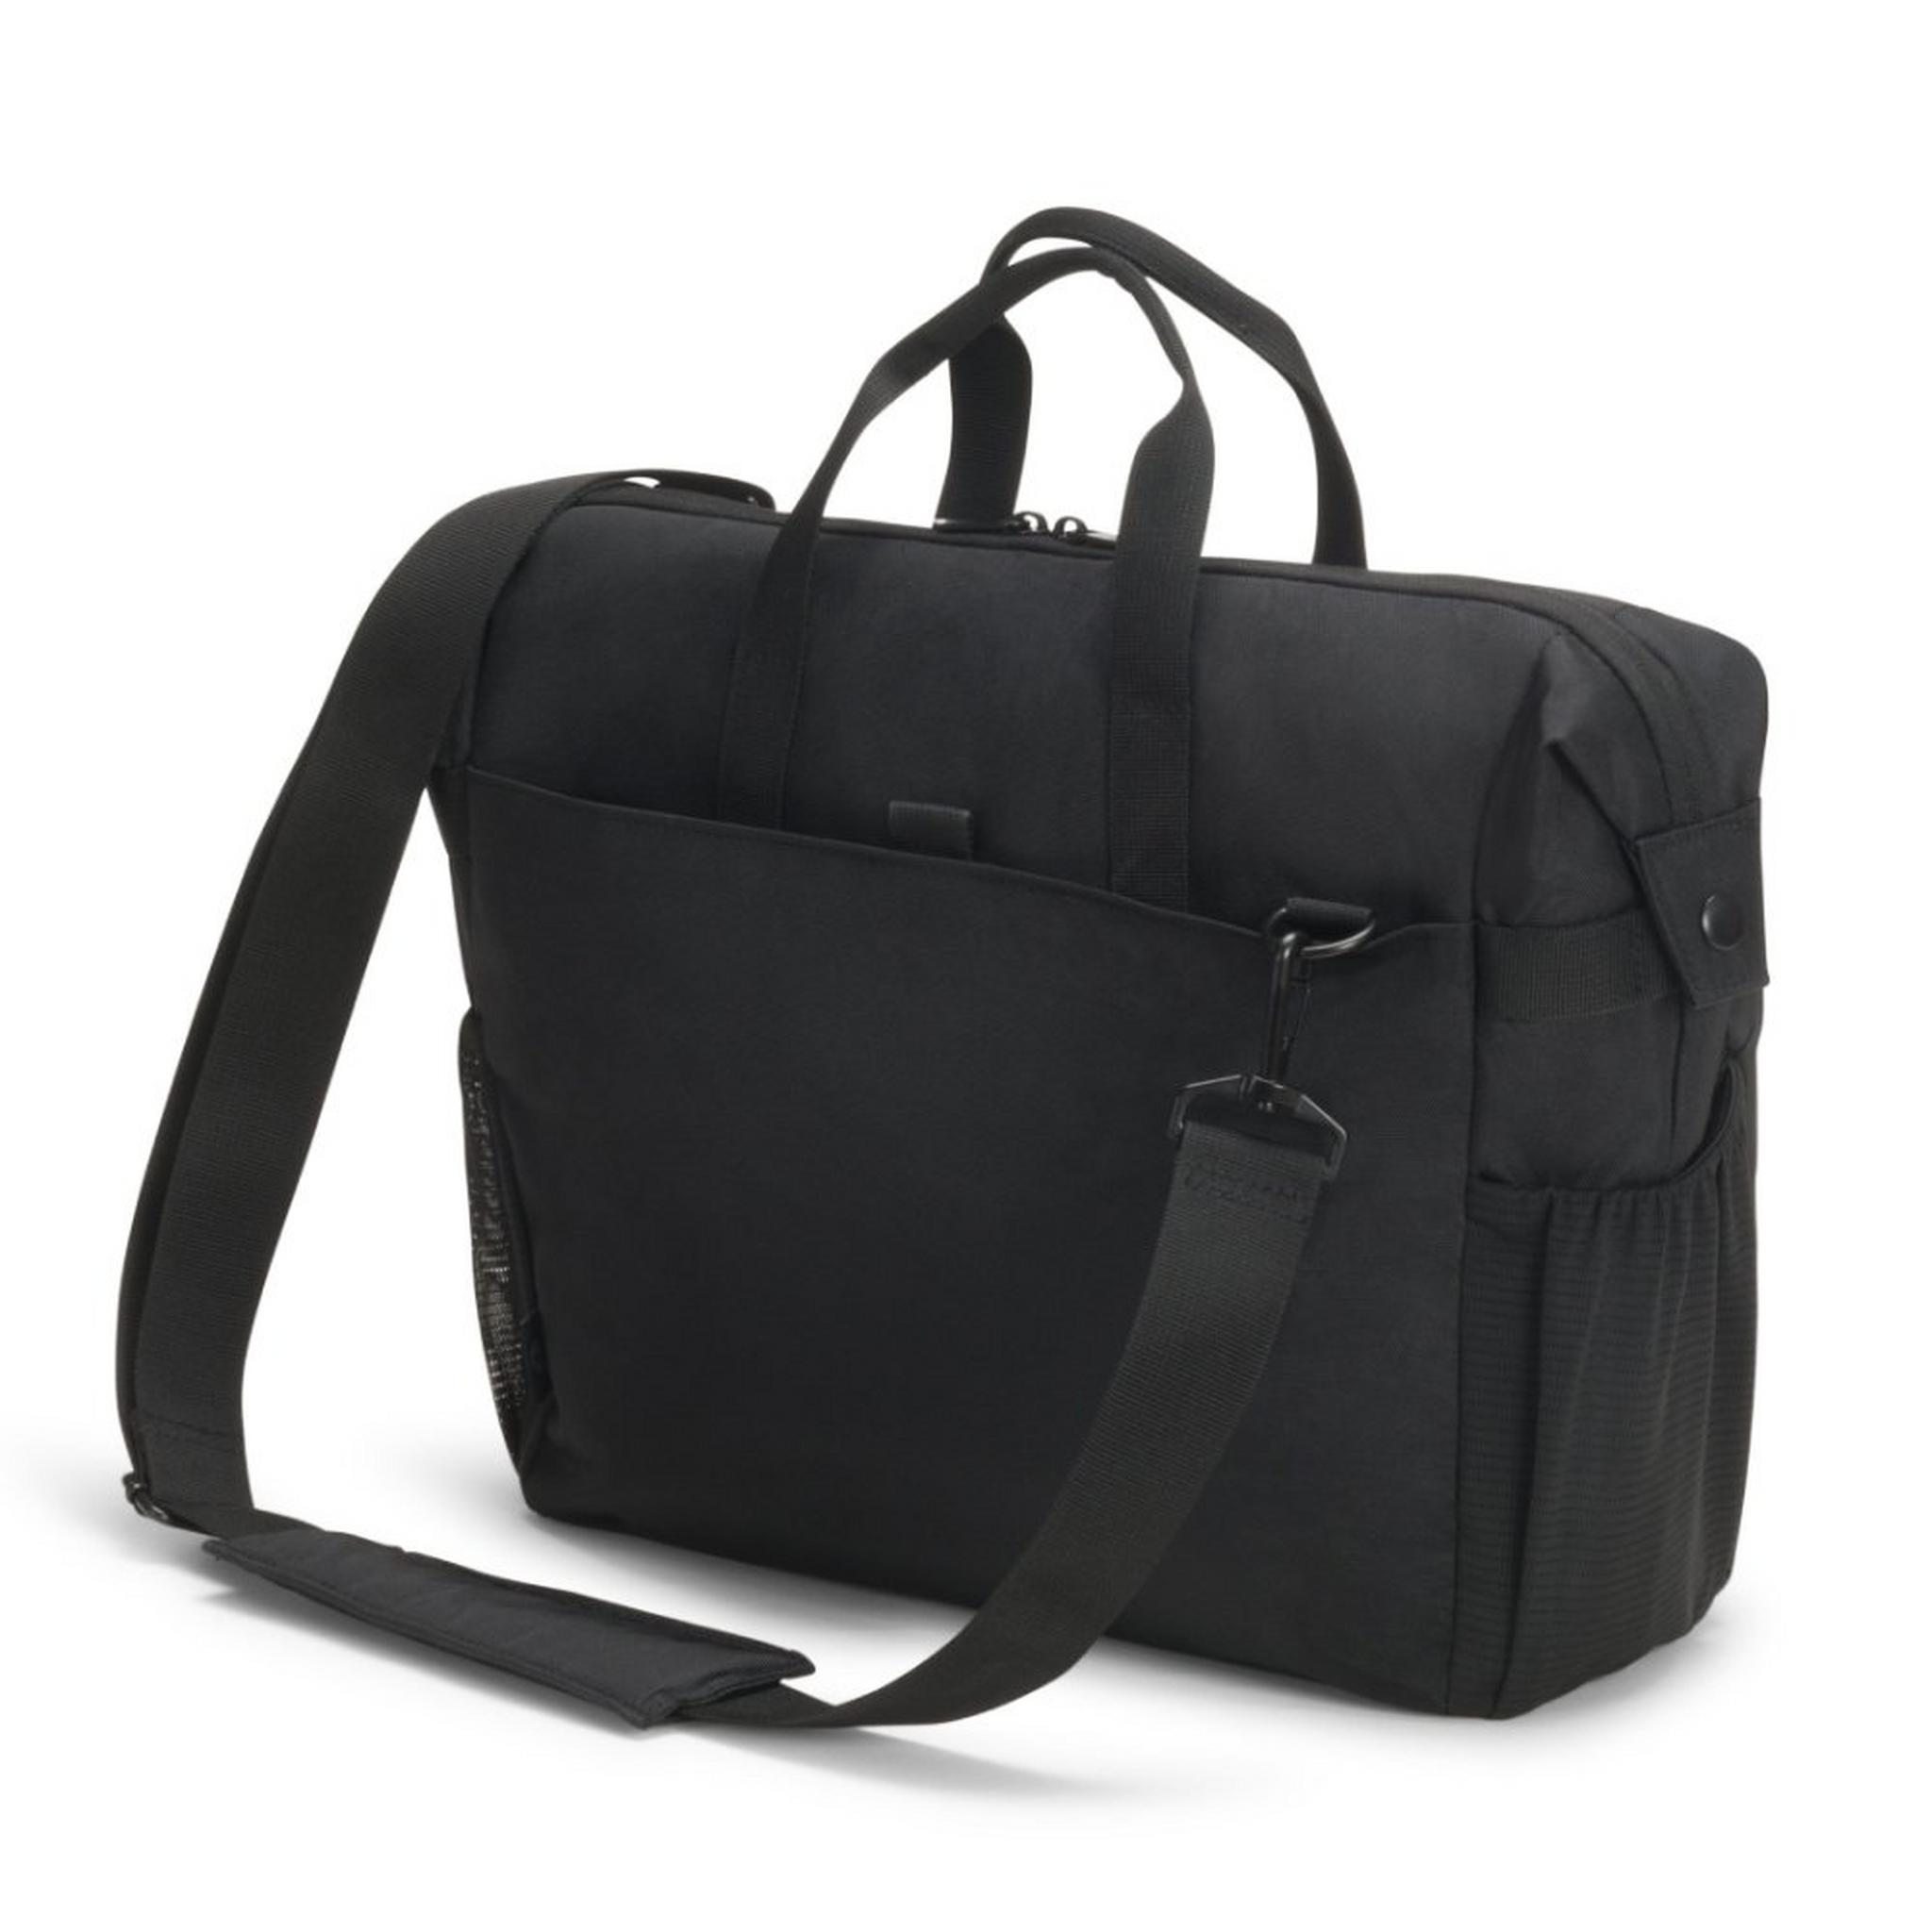 حقيبة ايكو ترافيلر جو للابتوب 15.6 بوصة من ديكوتا - أسود